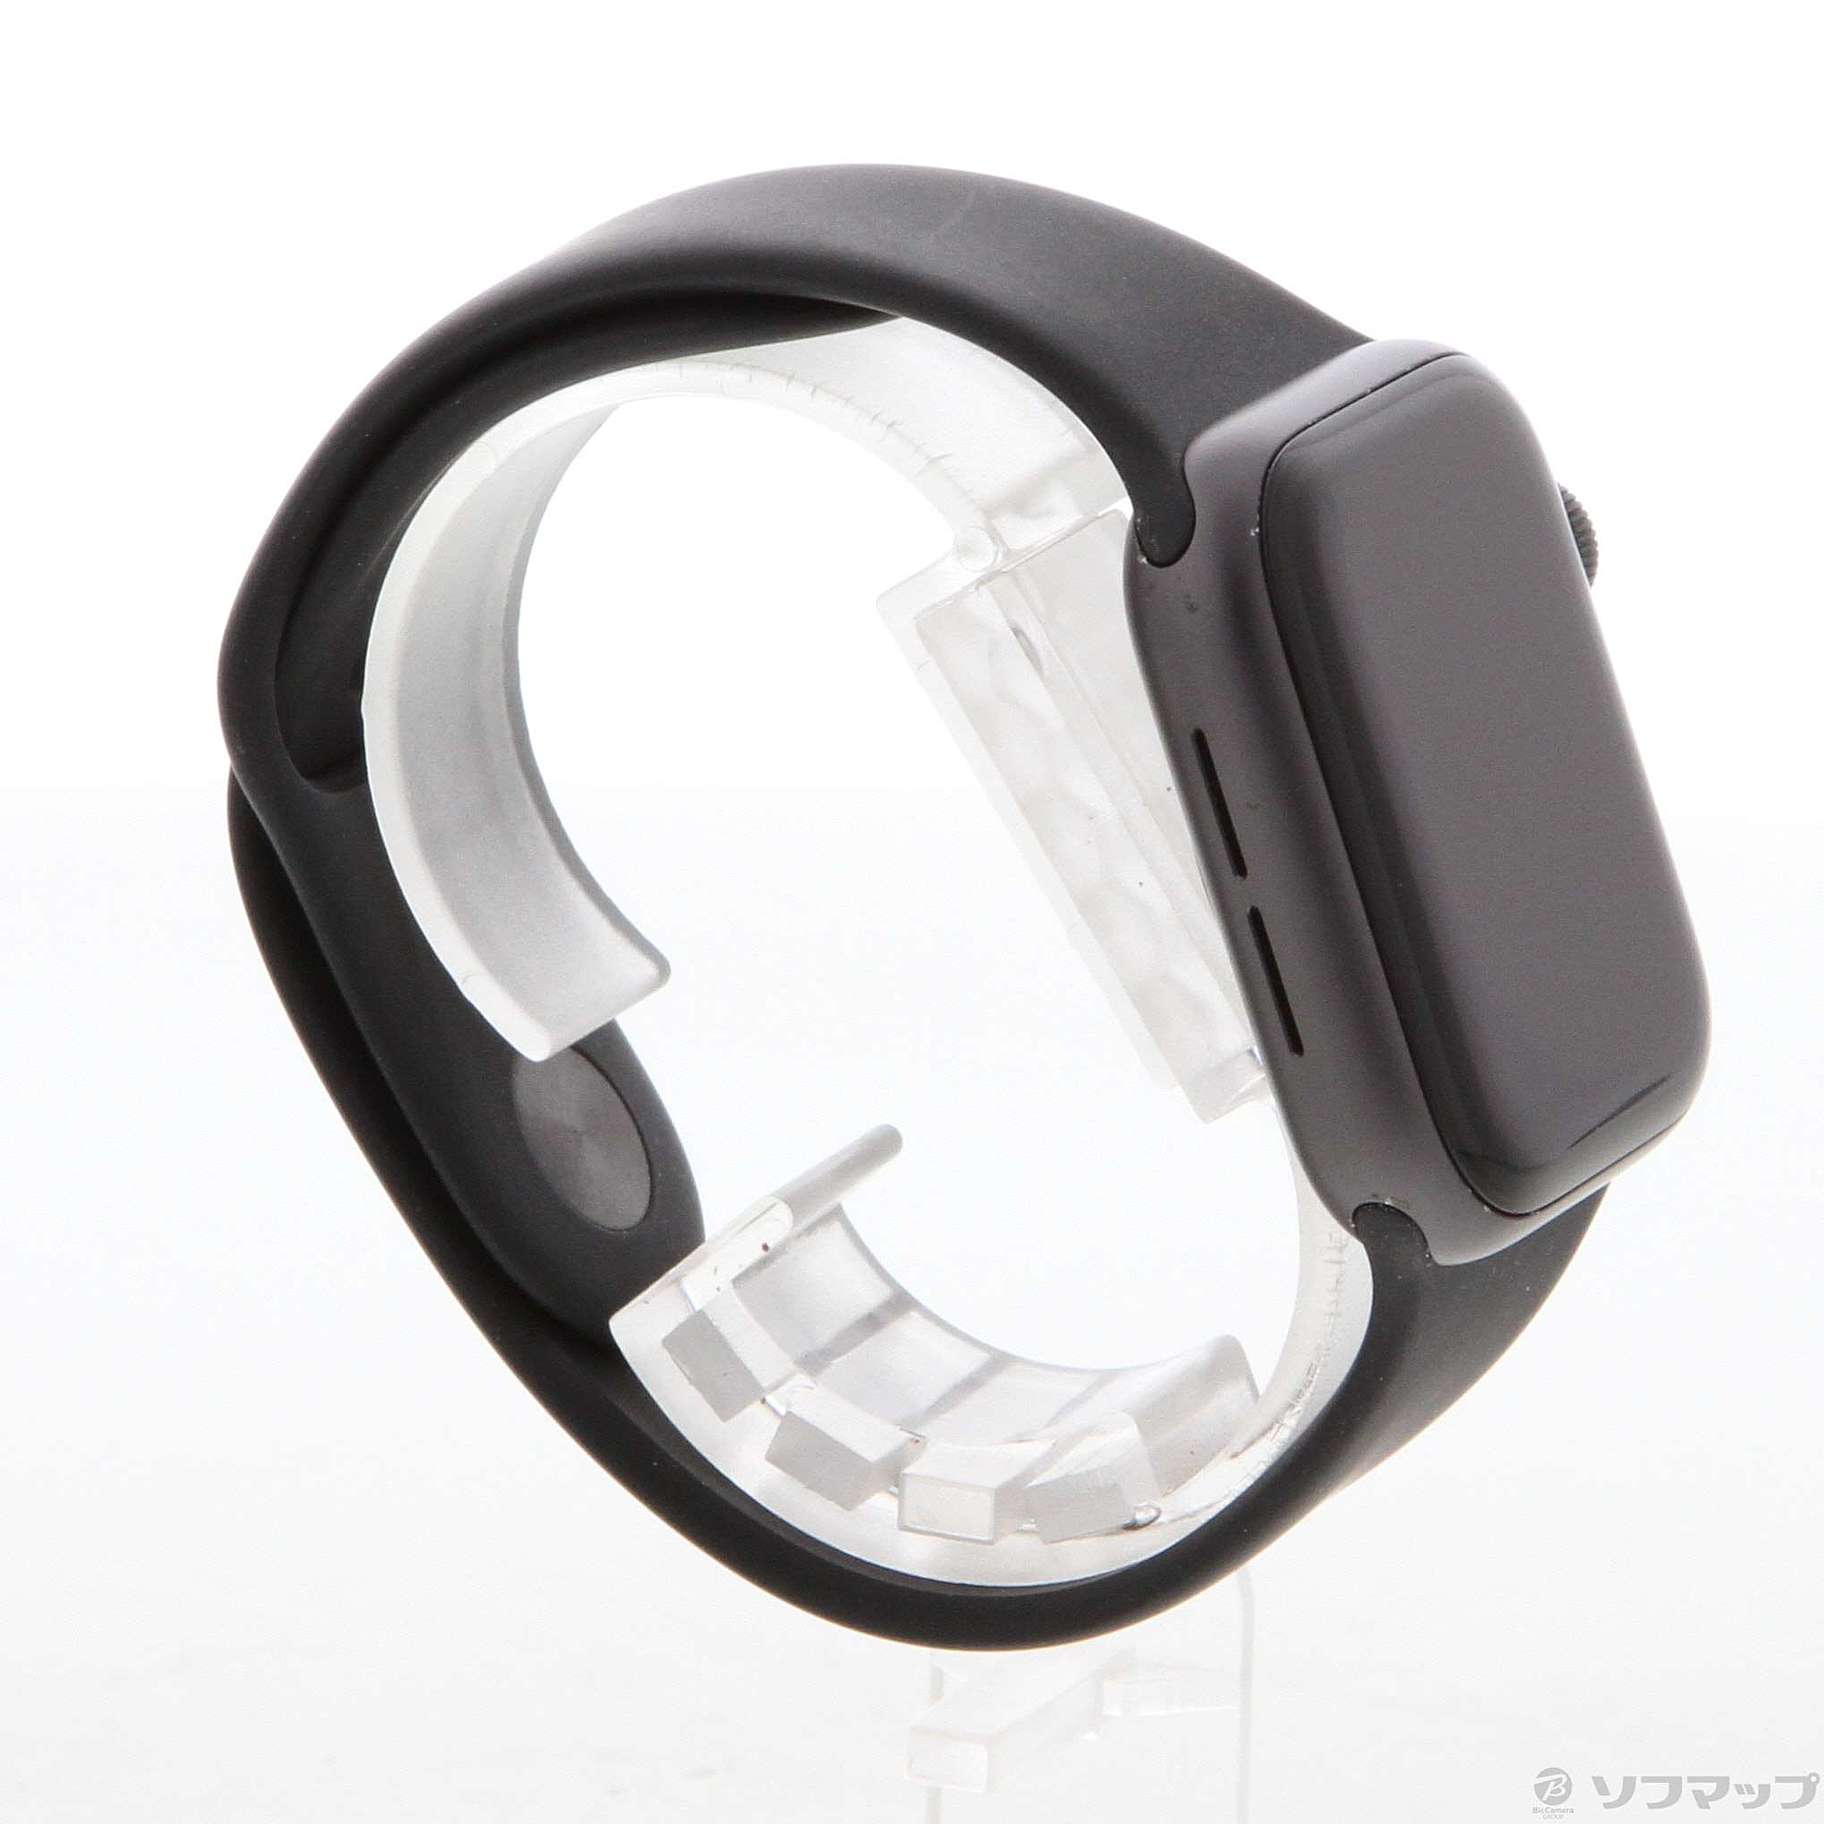 中古品〕 Apple Watch Series 4 GPS 40mm スペースグレイアルミニウム ...